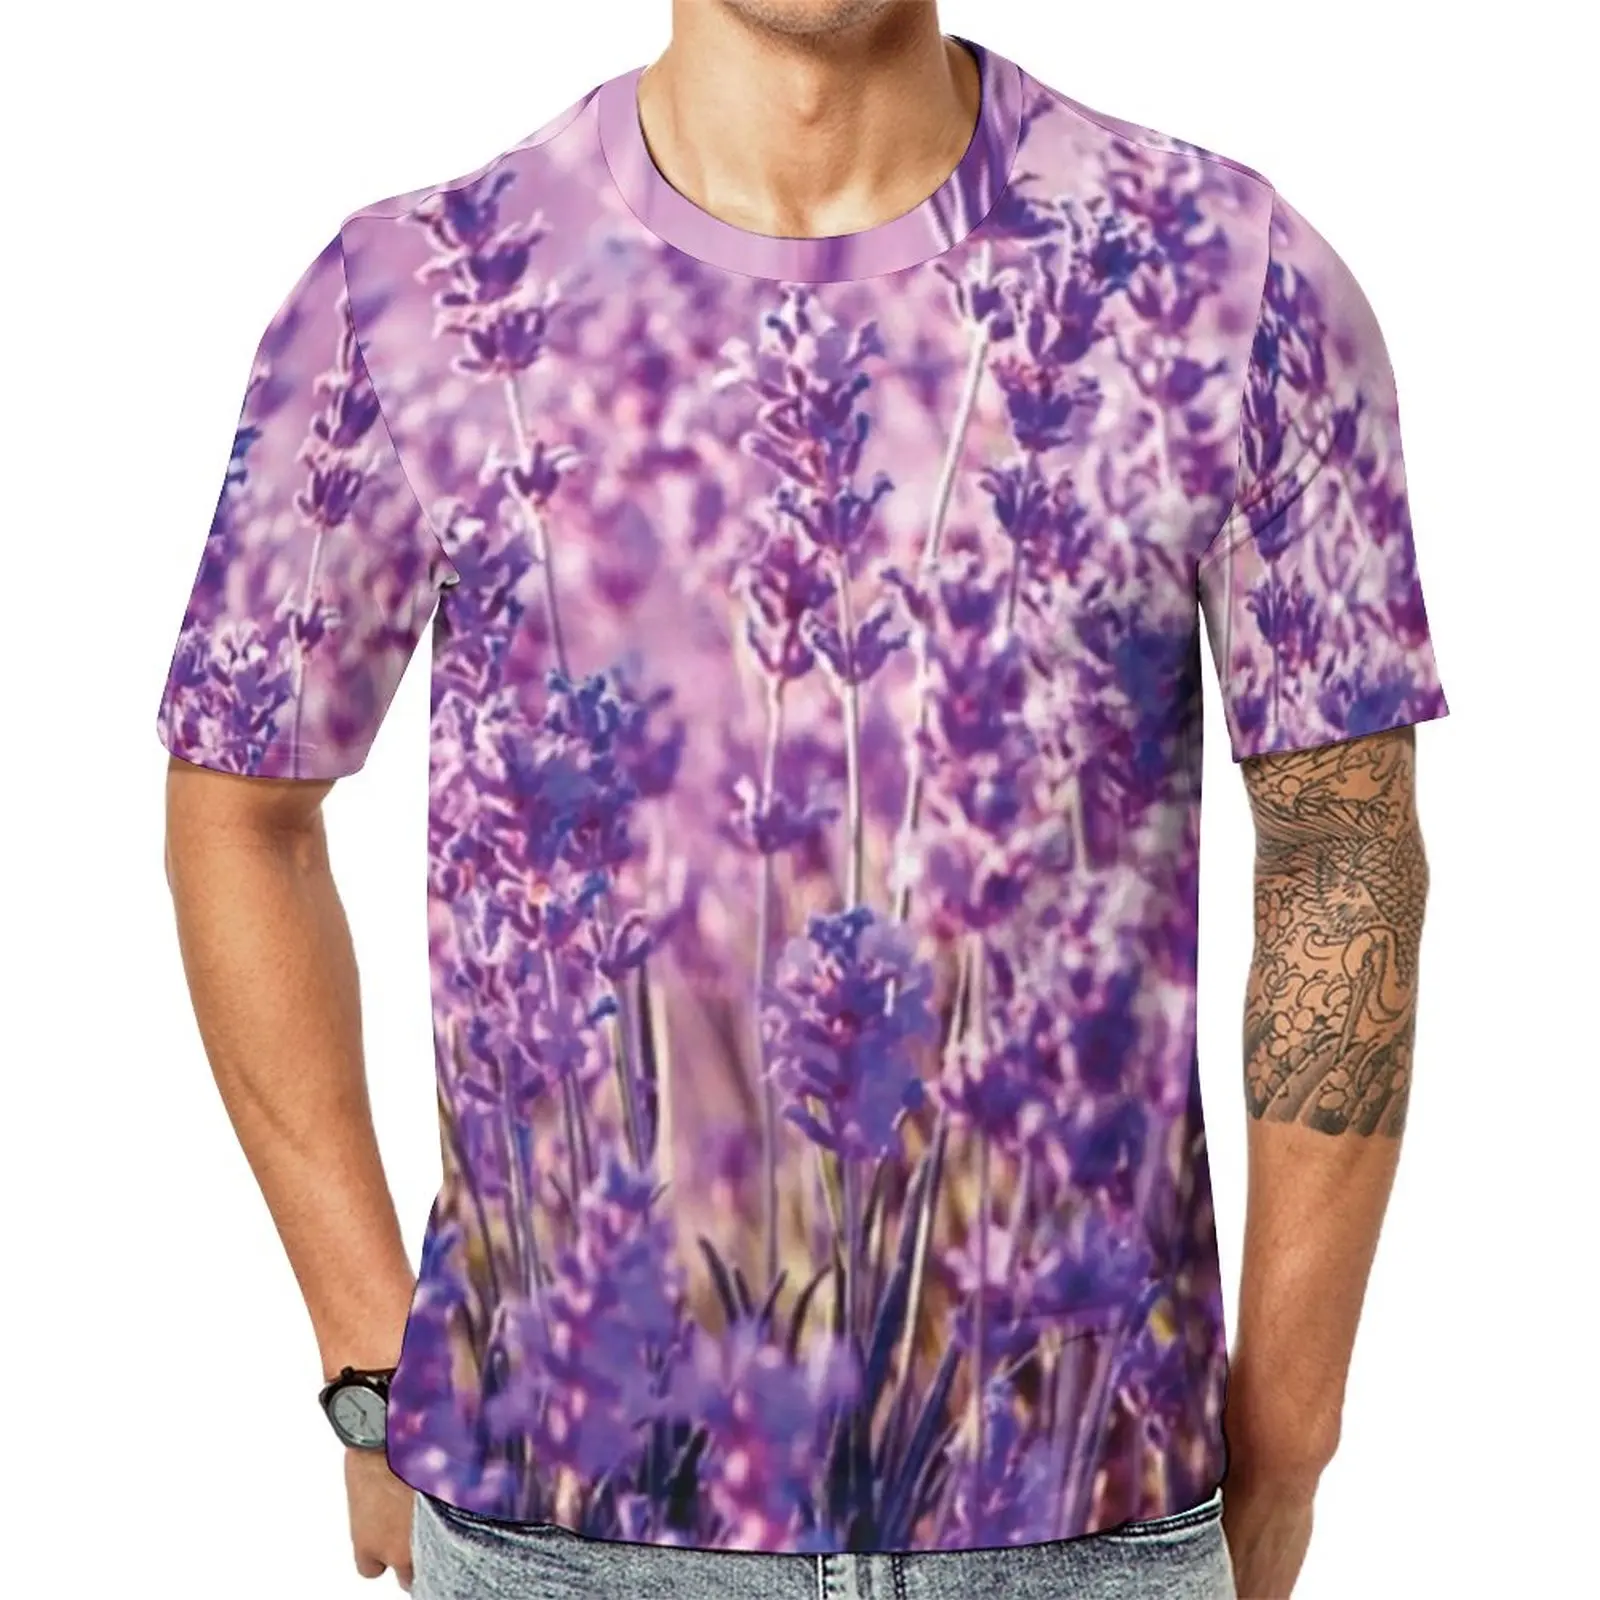 

Лавандовая футболка с фиолетовым цветочным принтом, мужские трендовые футболки, оригинальные футболки с коротким рукавом, уличный стиль, Одежда большого размера в подарок